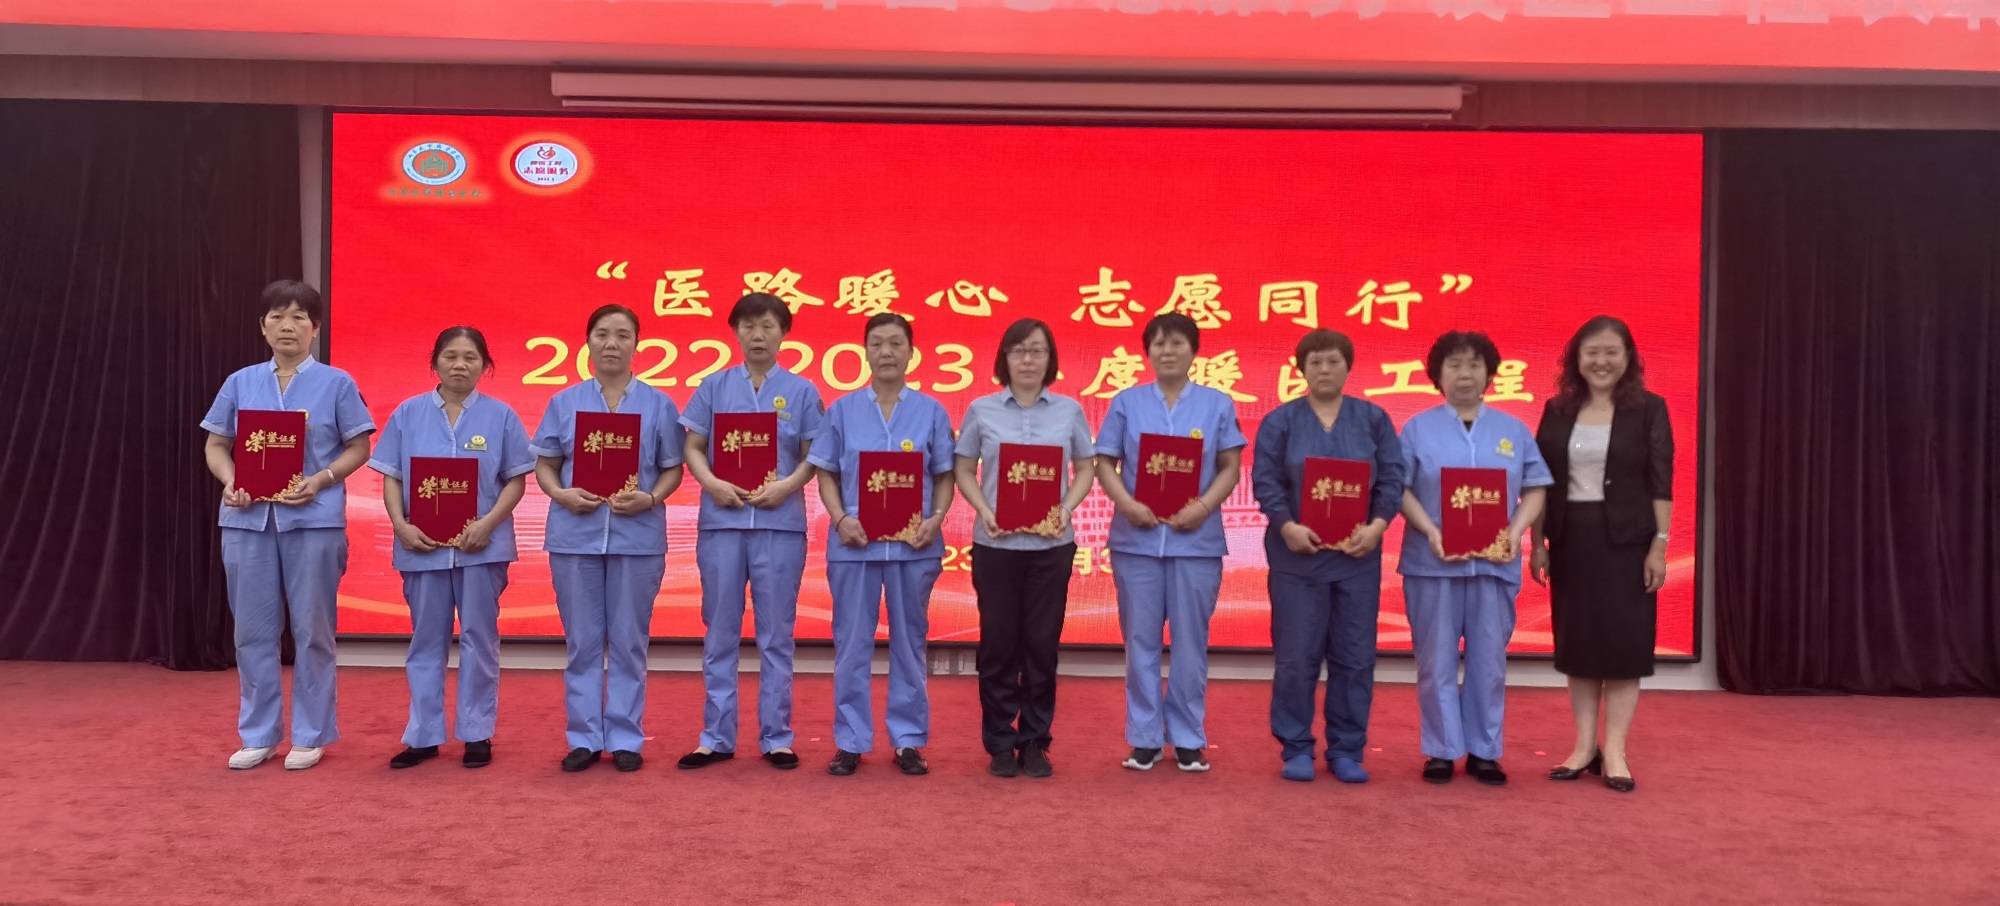 山东大学齐鲁医院物业服务中心9名员工获得“医路暖心 志愿同行”2022-2023年度暖医工程表彰